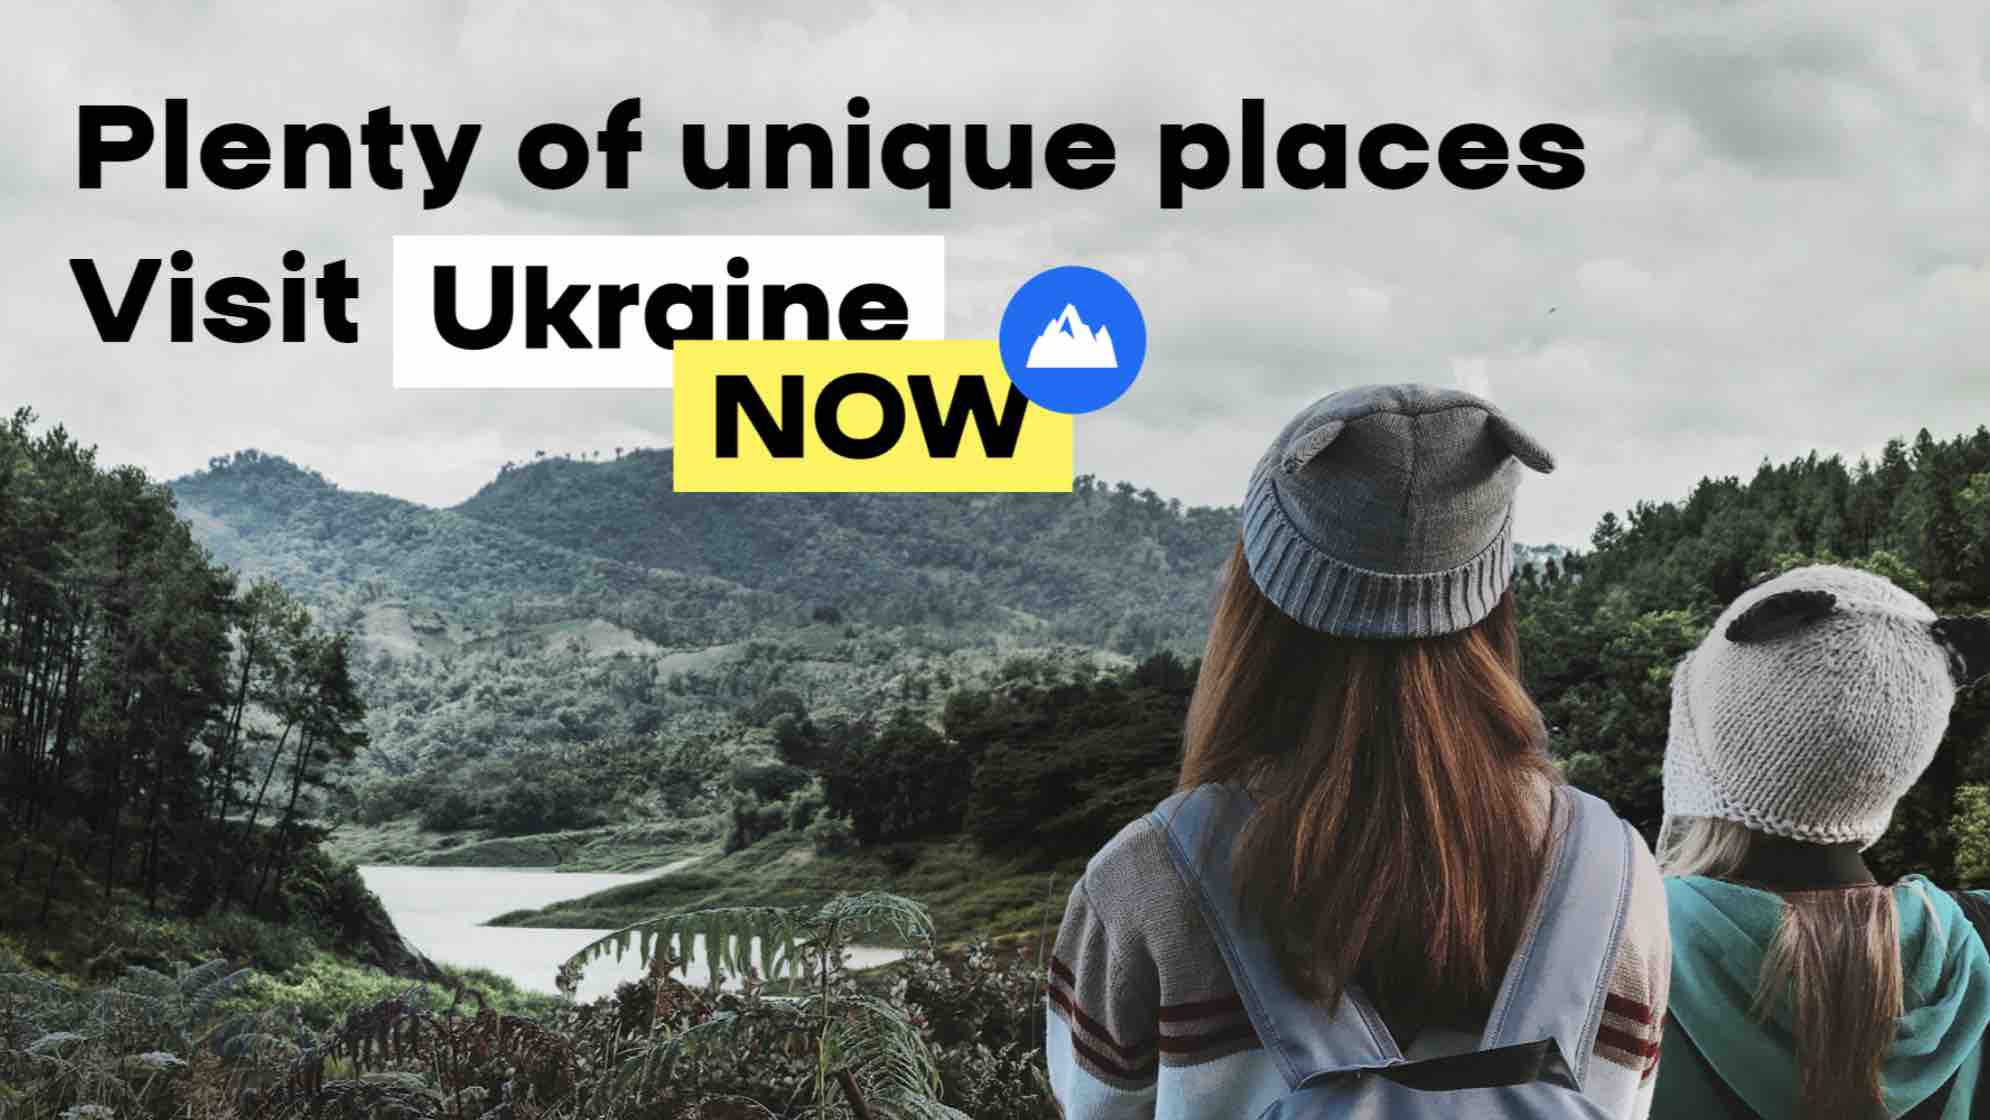 Ukraine Now